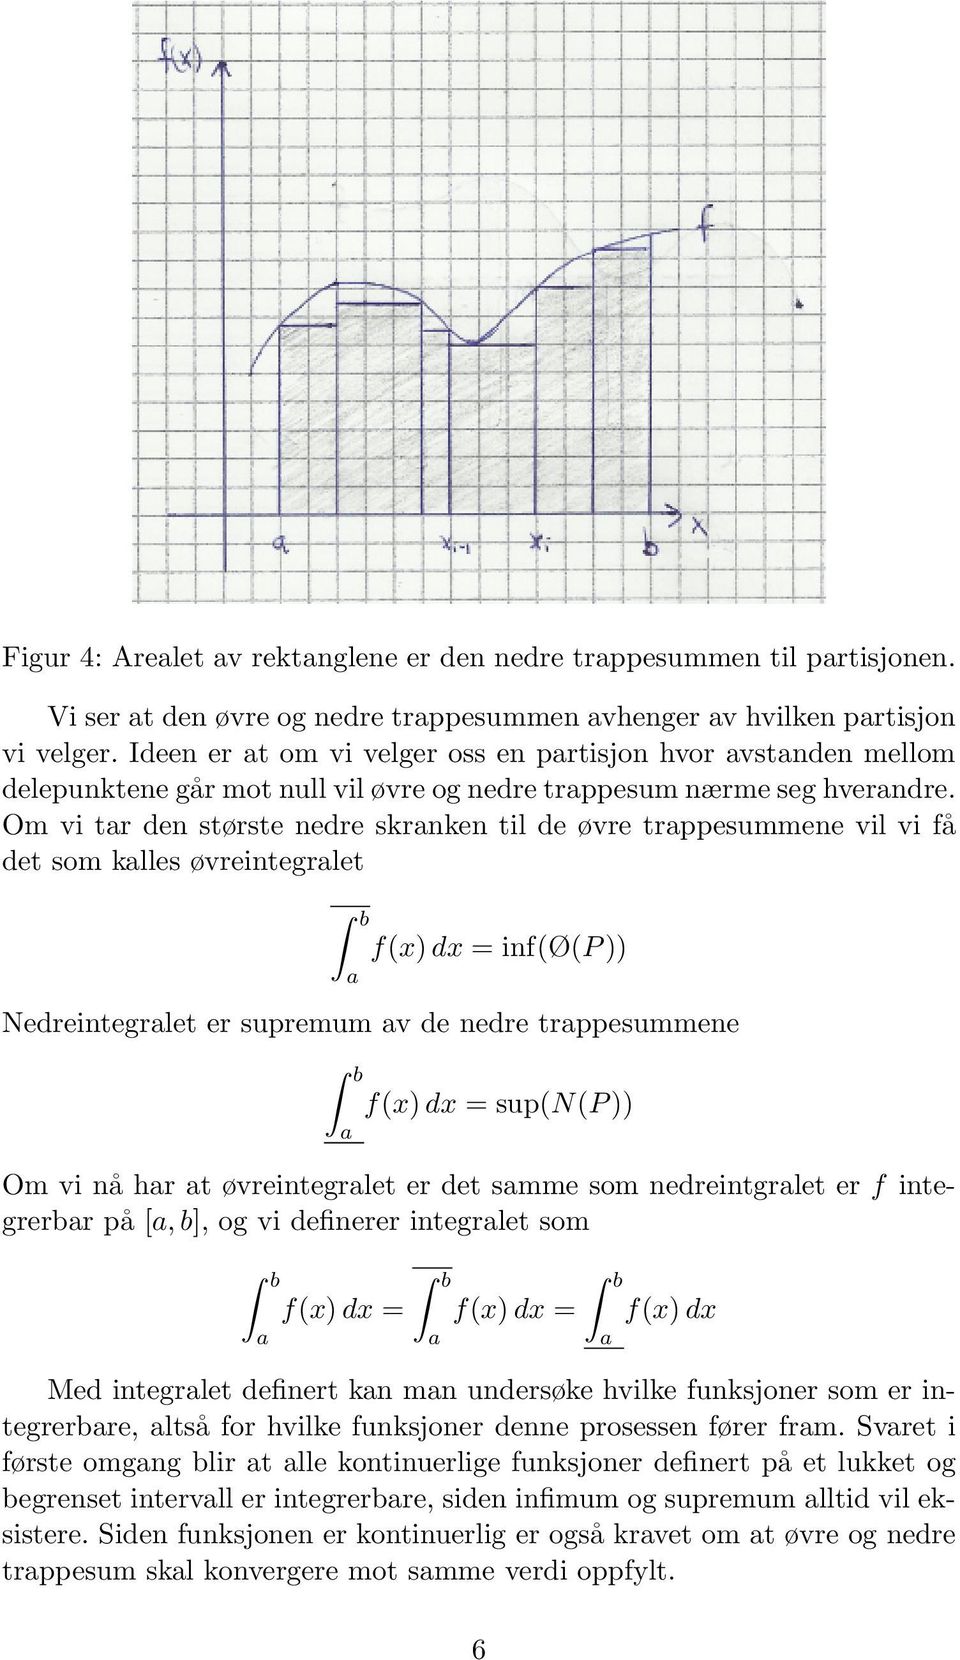 Om vi tr den største nedre skrnken til de øvre trppesummene vil vi få det som klles øvreintegrlet b f(x) dx = inf(ø(p )) Nedreintegrlet er supremum v de nedre trppesummene b f(x) dx = sup(n(p )) Om